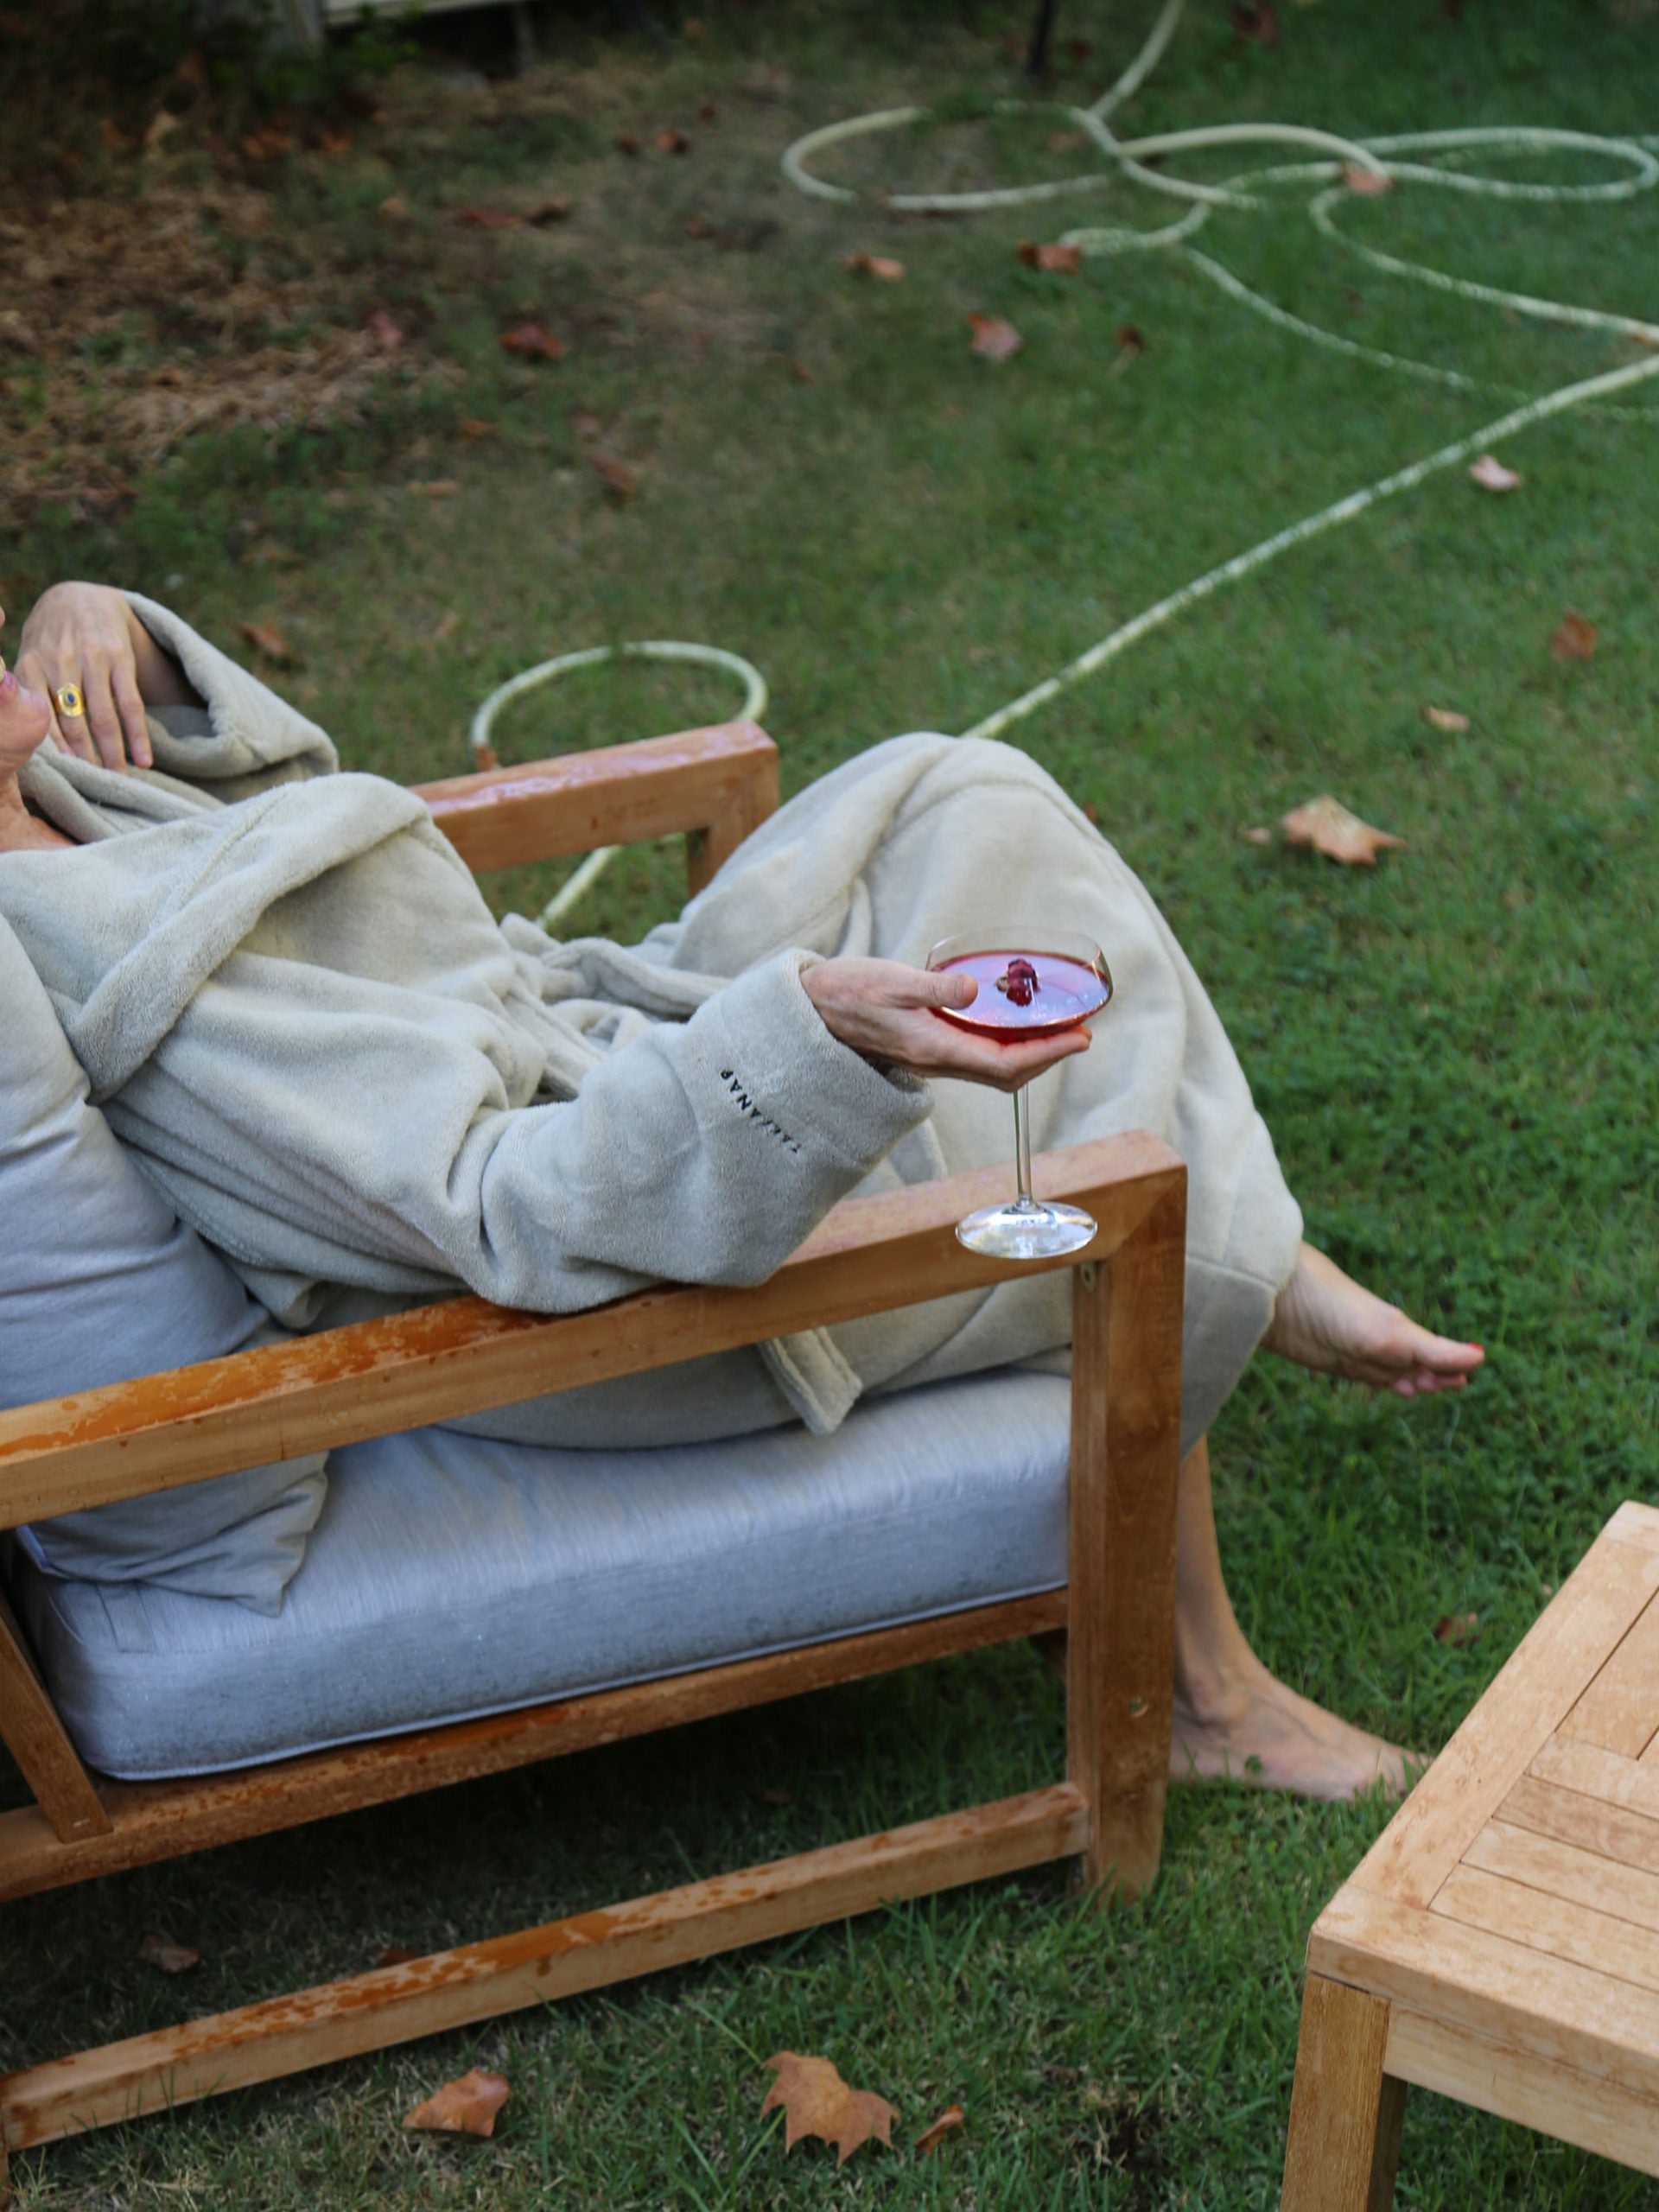  אישה שלובשת חלוק רחצה יושבת על כיסא עץ בגינה שלה ומחזיקה בידה כוס יין עם יין אדום